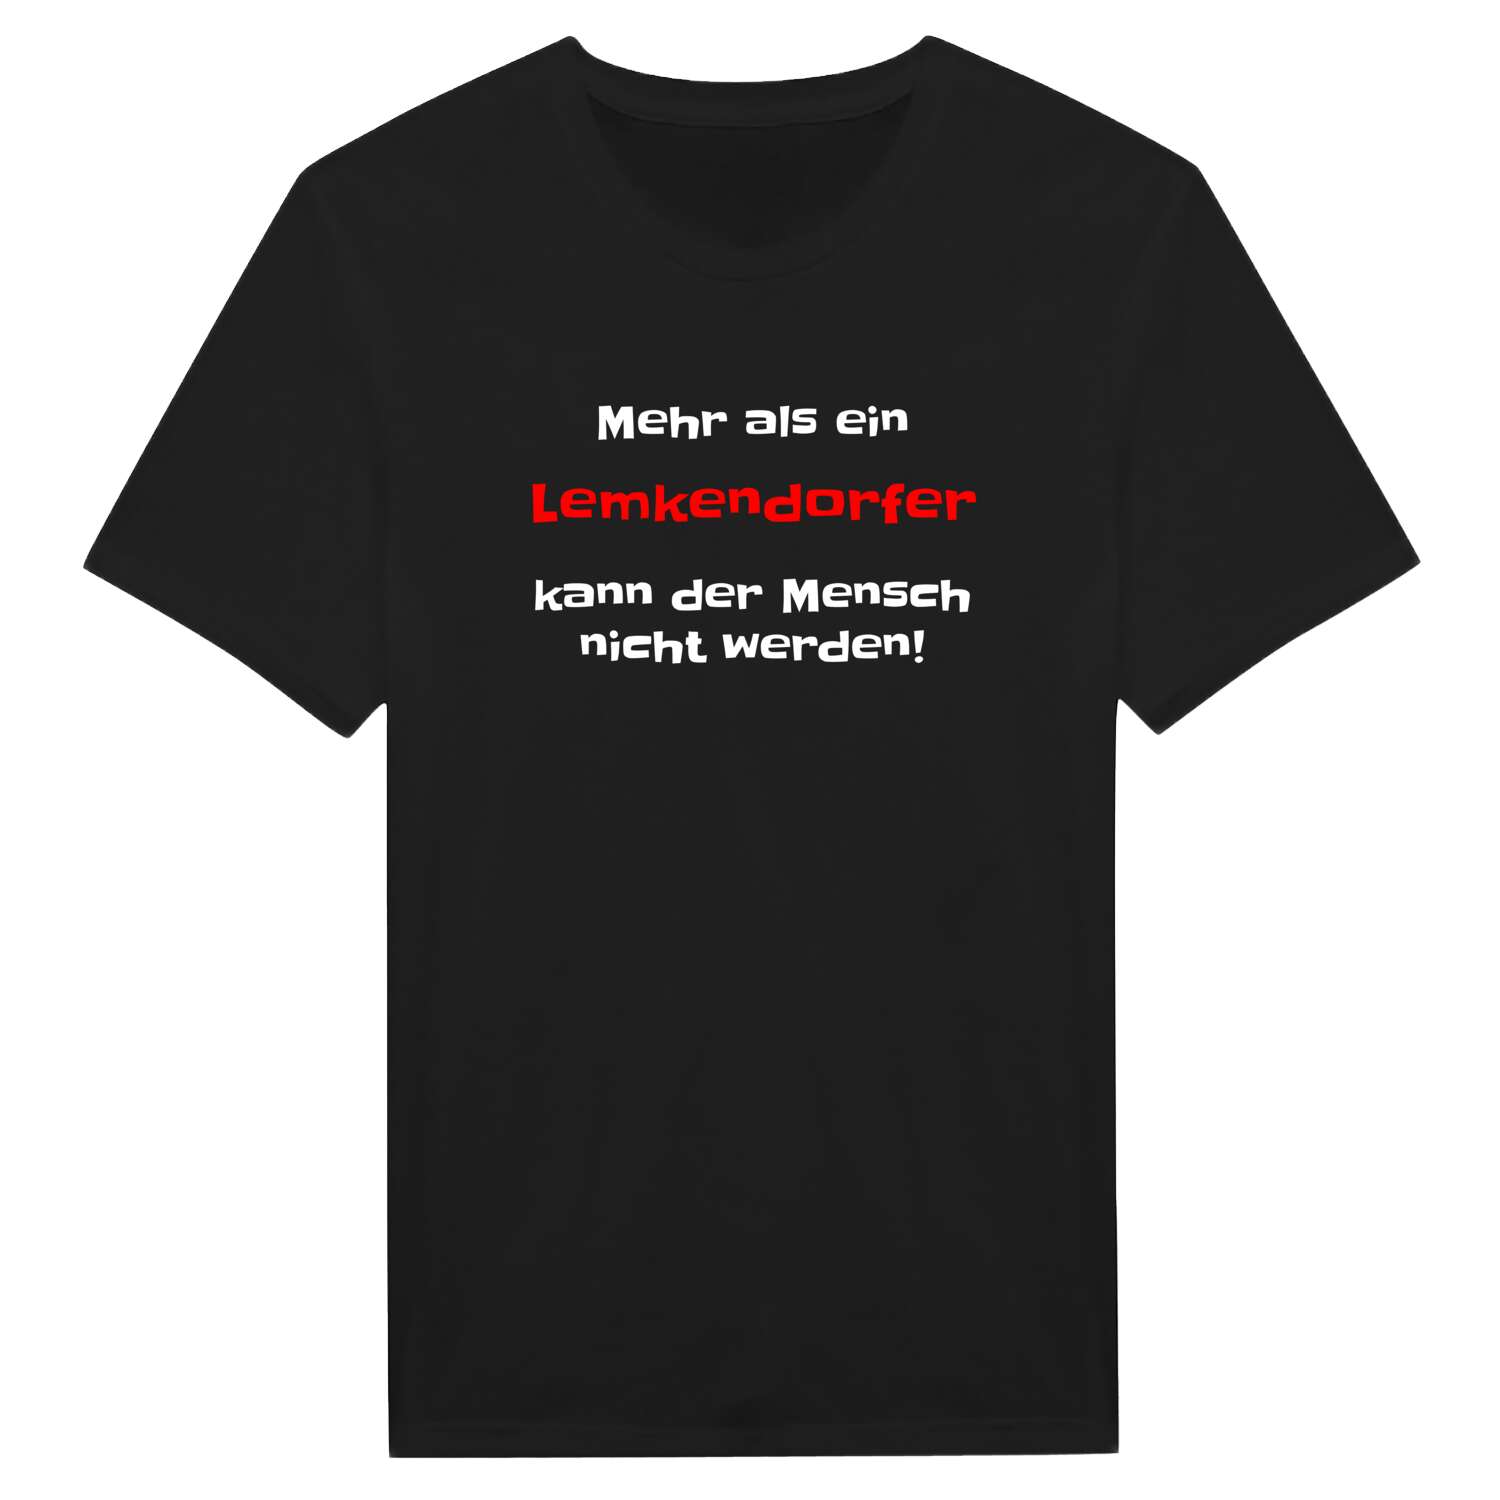 Lemkendorf T-Shirt »Mehr als ein«